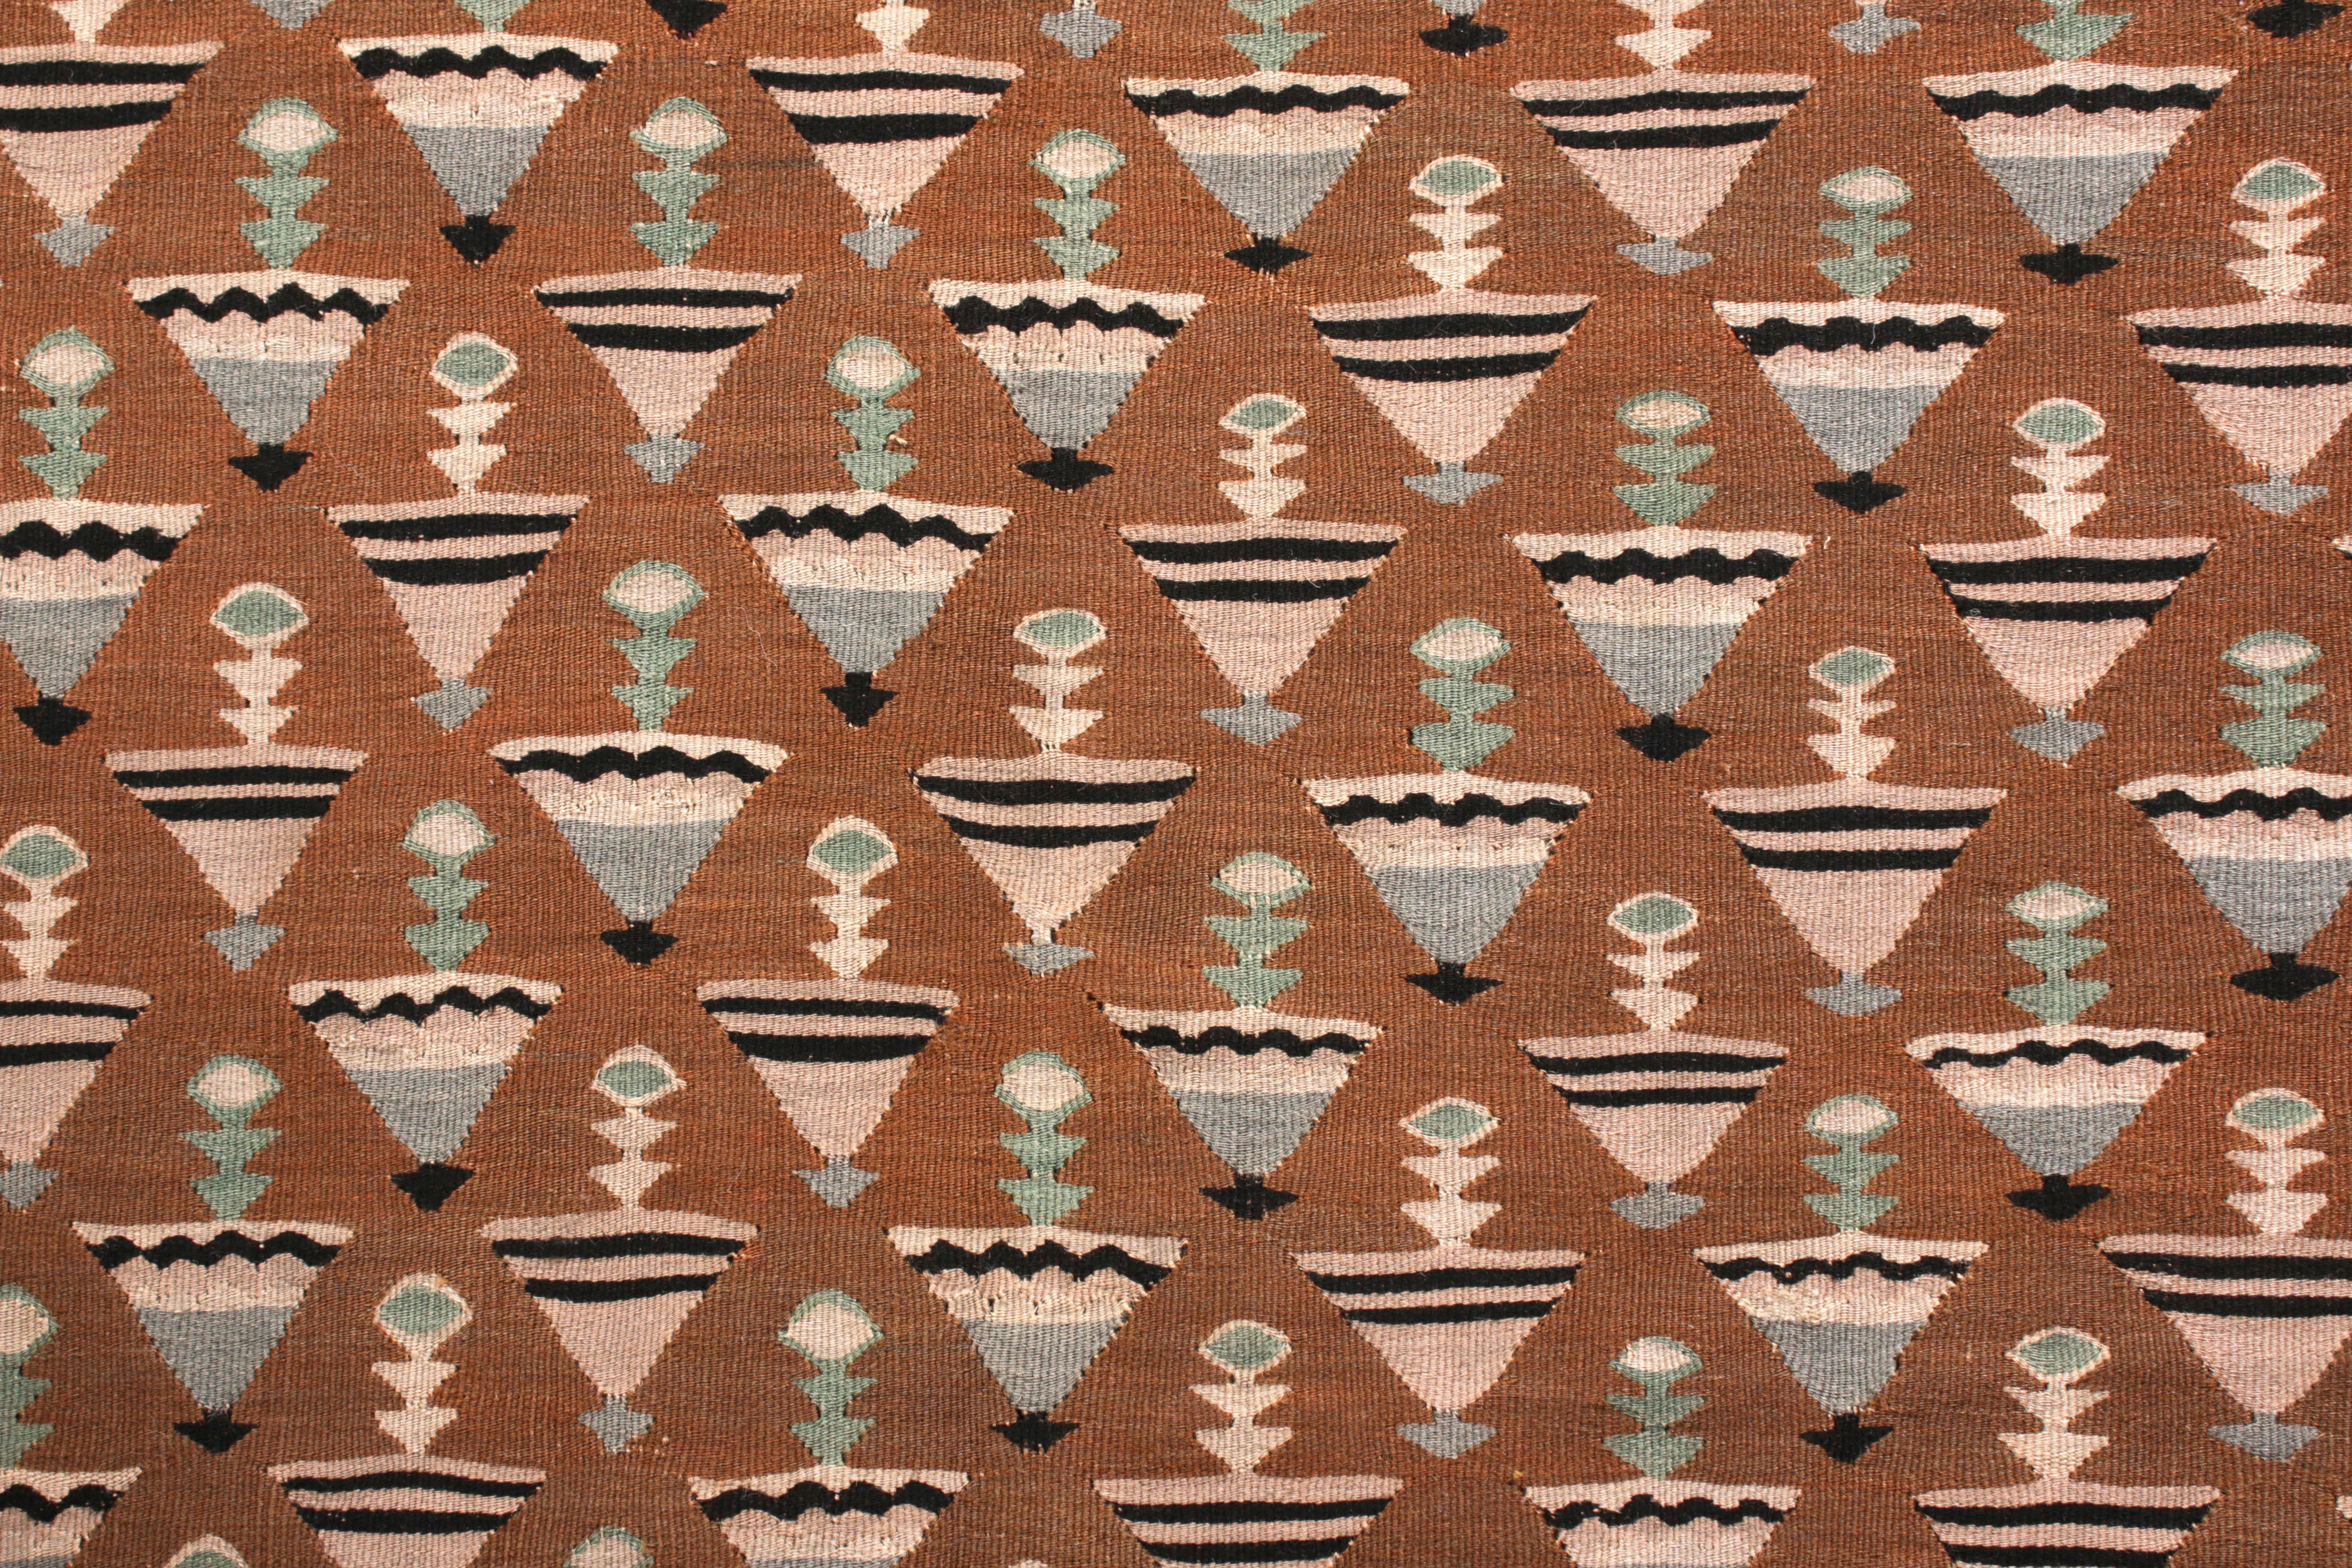 Turkish Mid-Century Vintage Kilim Rug in Brown Pink Geometric Pattern by Rug & Kilim For Sale